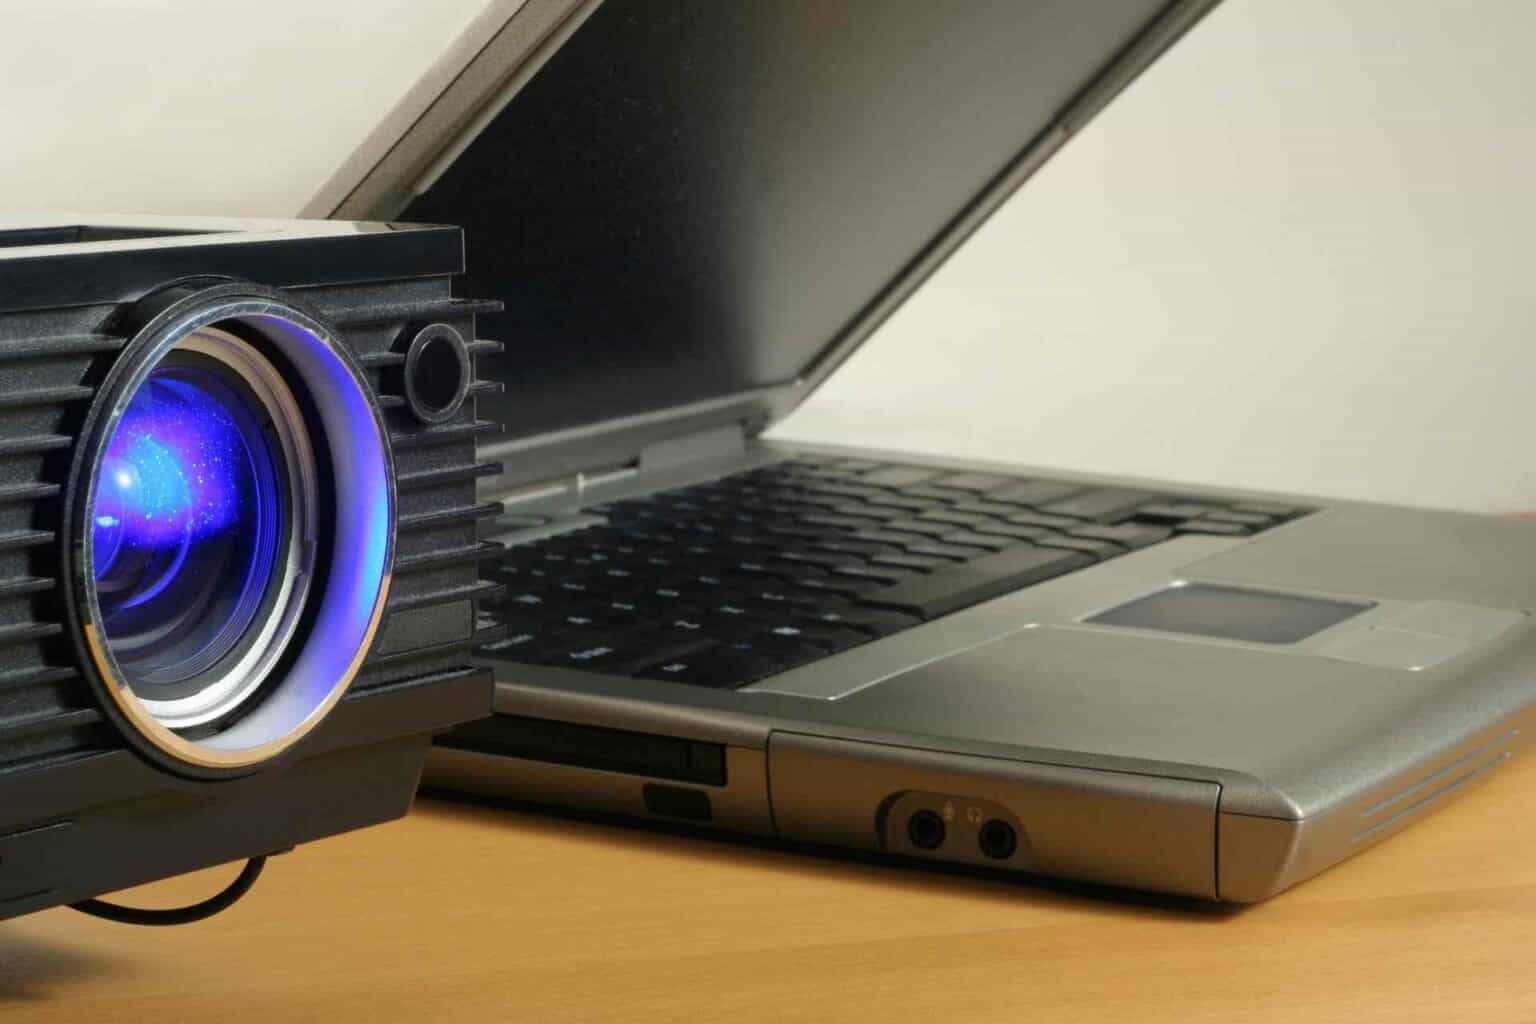 epson projector wont connect laptop via hdmi